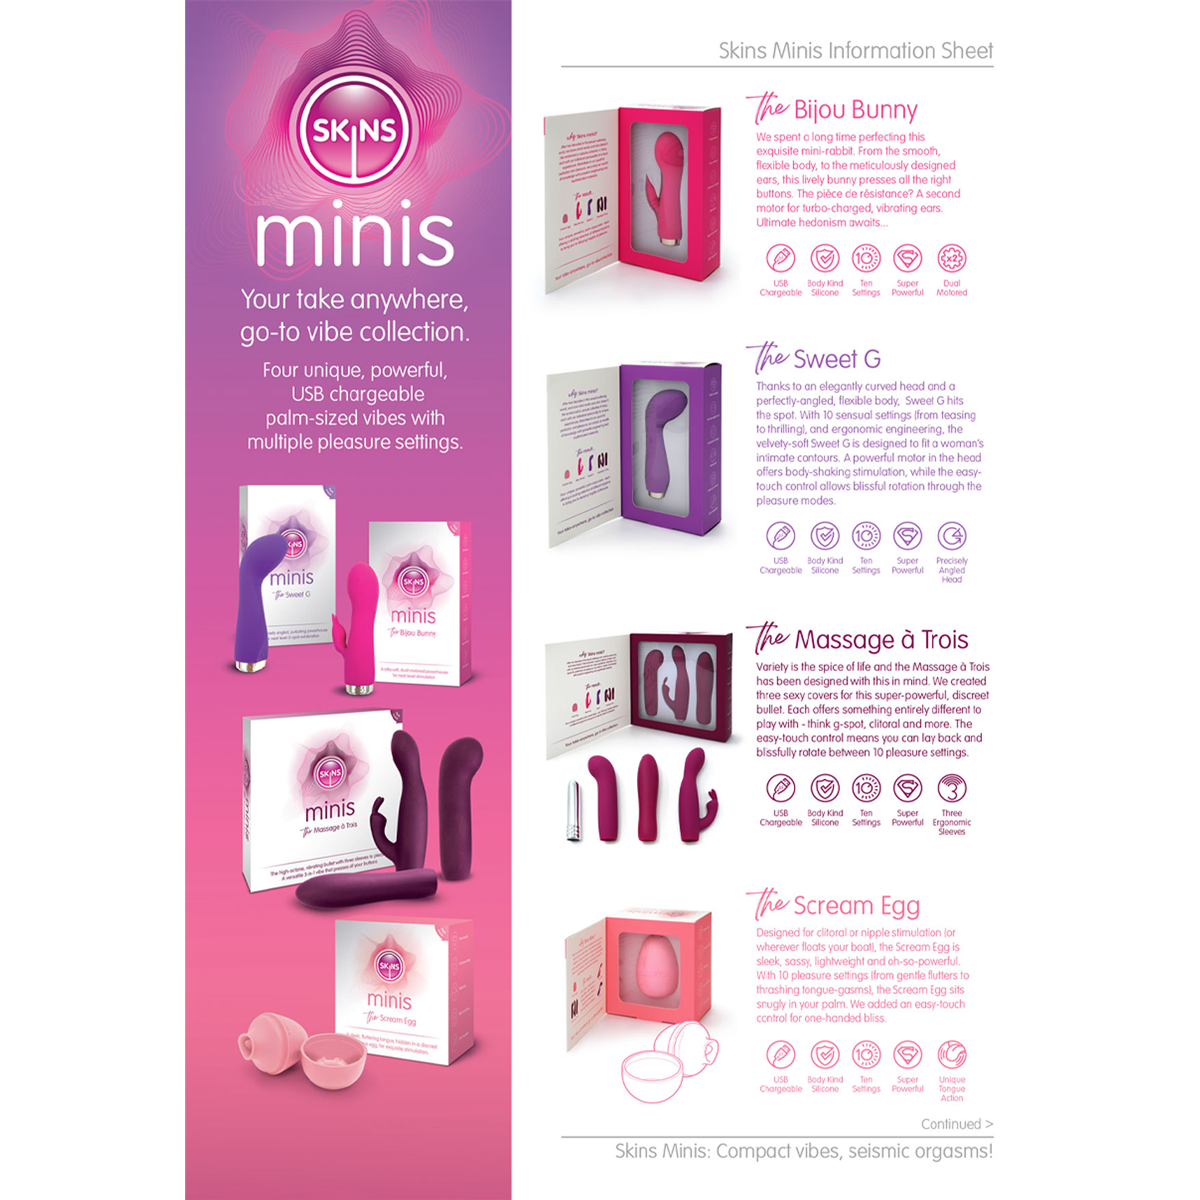 Skins Minis Information Sheet